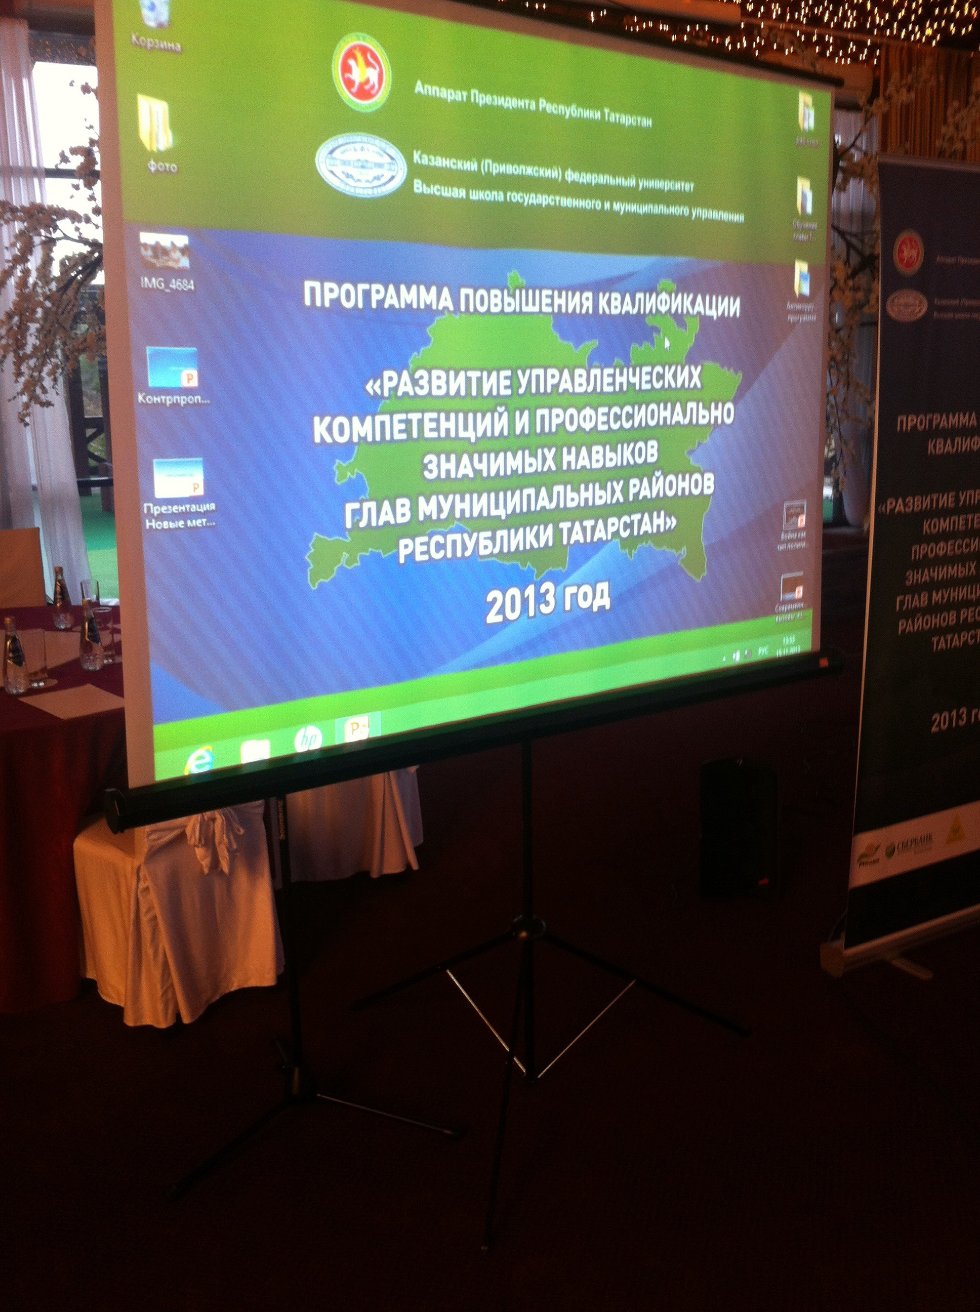 Конфликтологи активно участвуют в повышении квалификации глав муниципальных районов Республики Татарстан